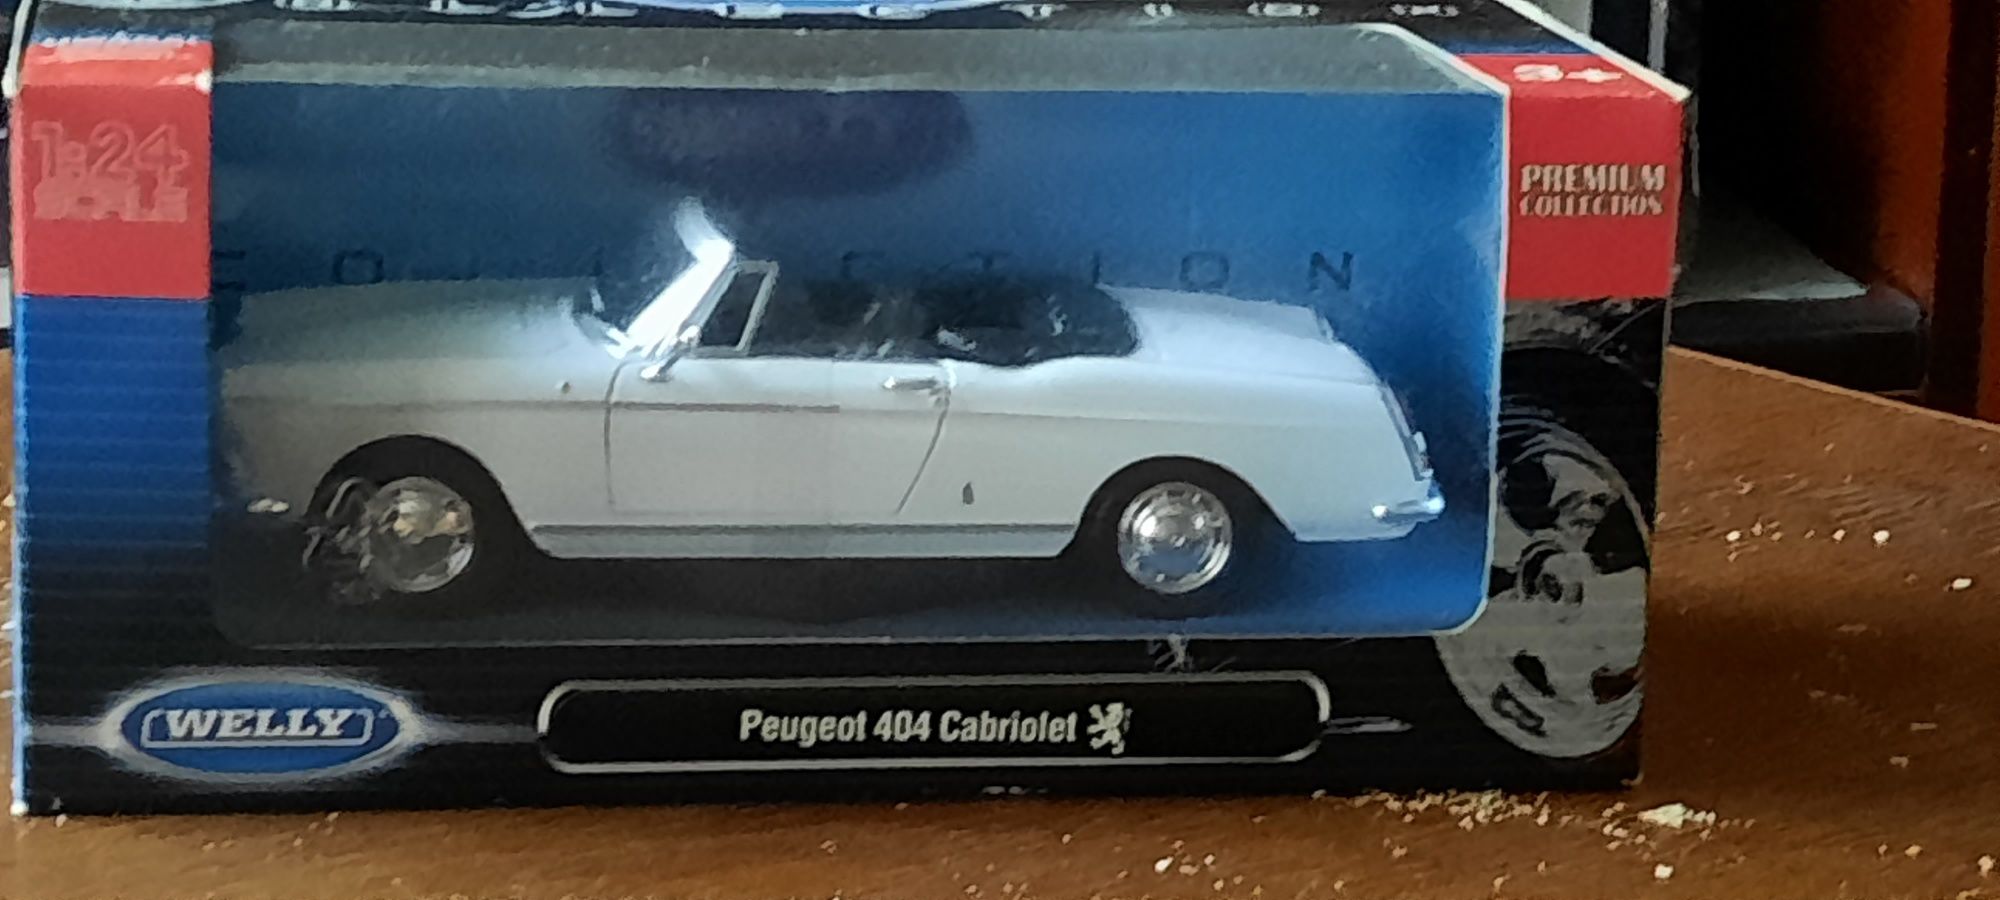 Mam na na sprzedaż Peugeota 404 Cabrio w skali 1:24